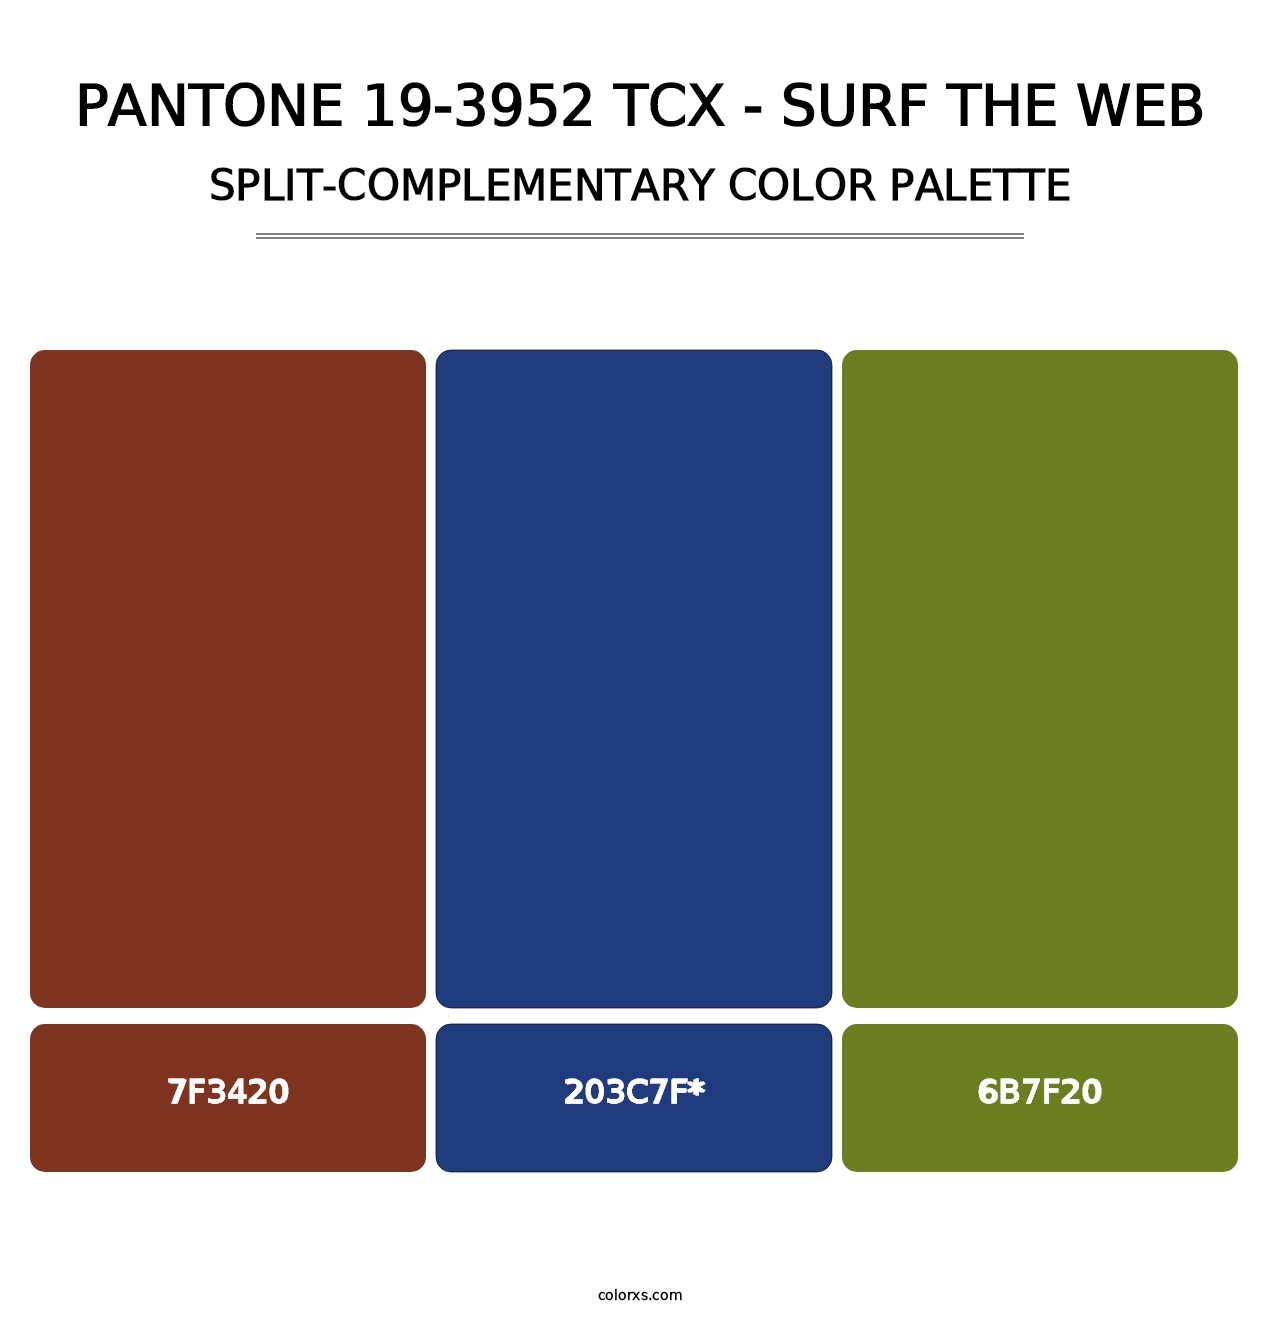 PANTONE 19-3952 TCX - Surf the Web - Split-Complementary Color Palette